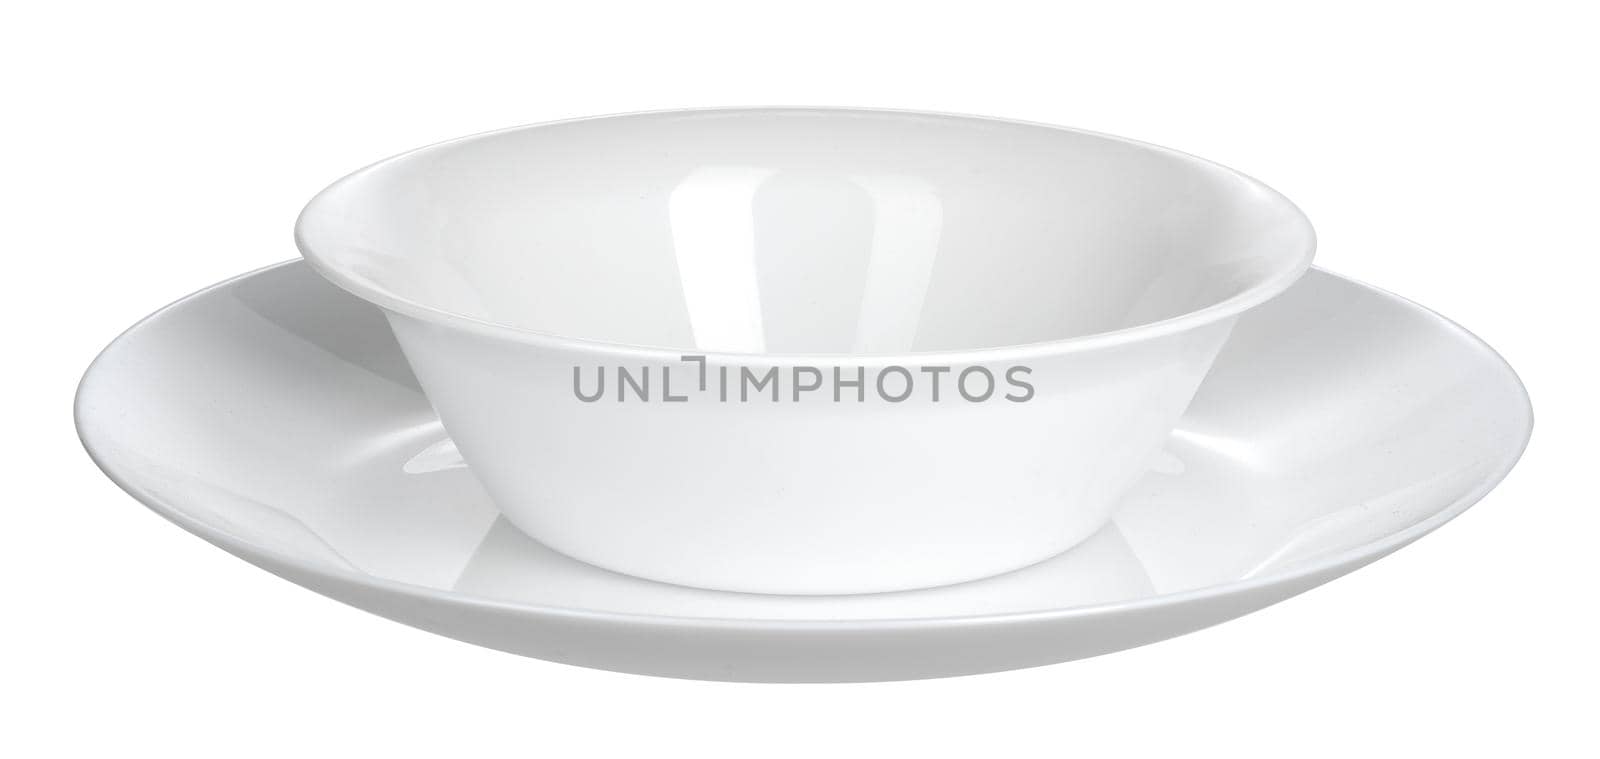 Ceramic white bowl isolated on white background. Close up.